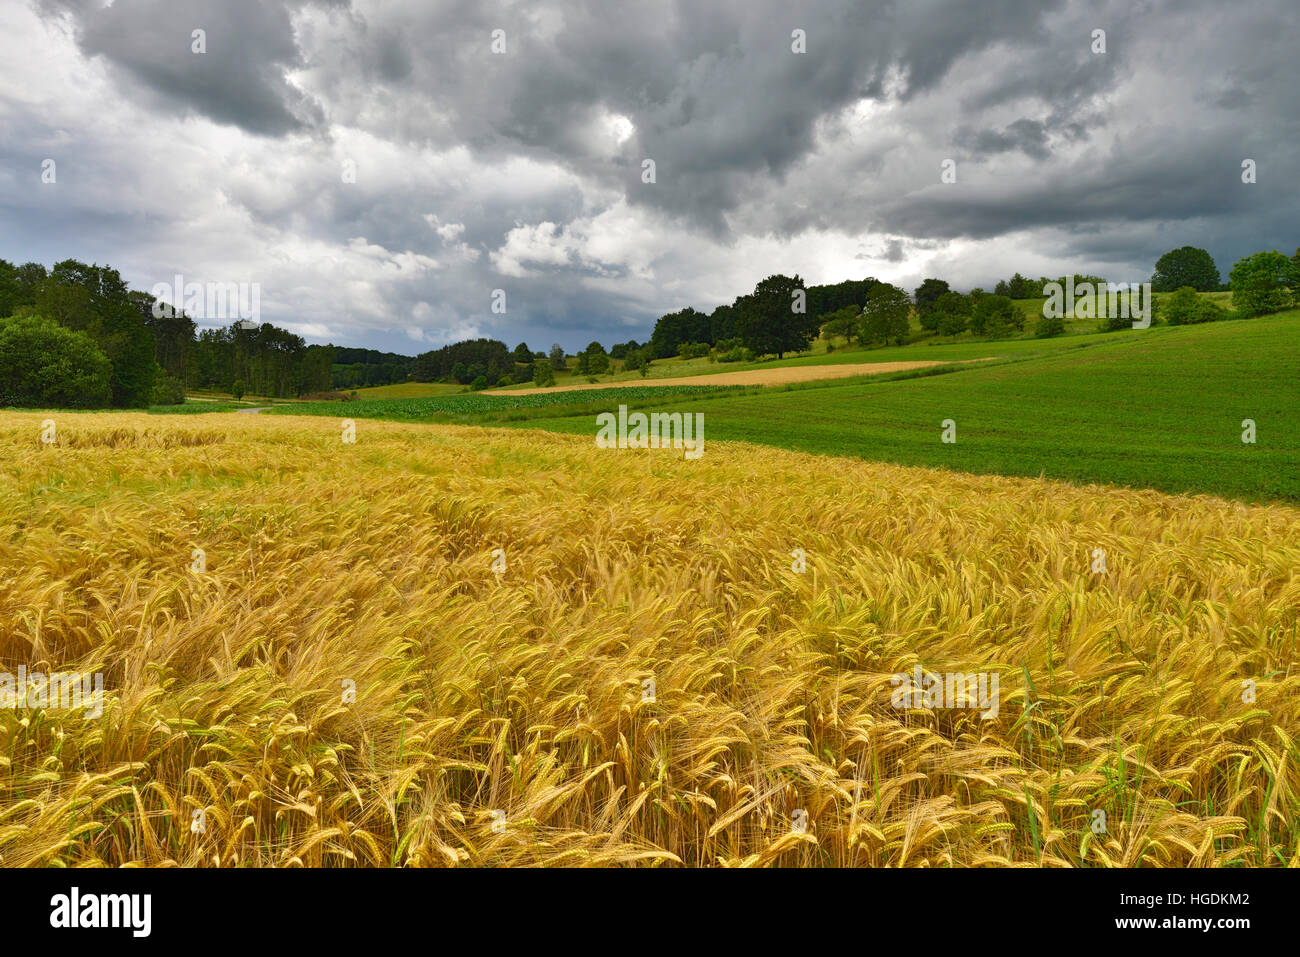 Le paysage culturel, dans un champ avec le vent du sud, ciel nuageux, Burgenland, Autriche Banque D'Images